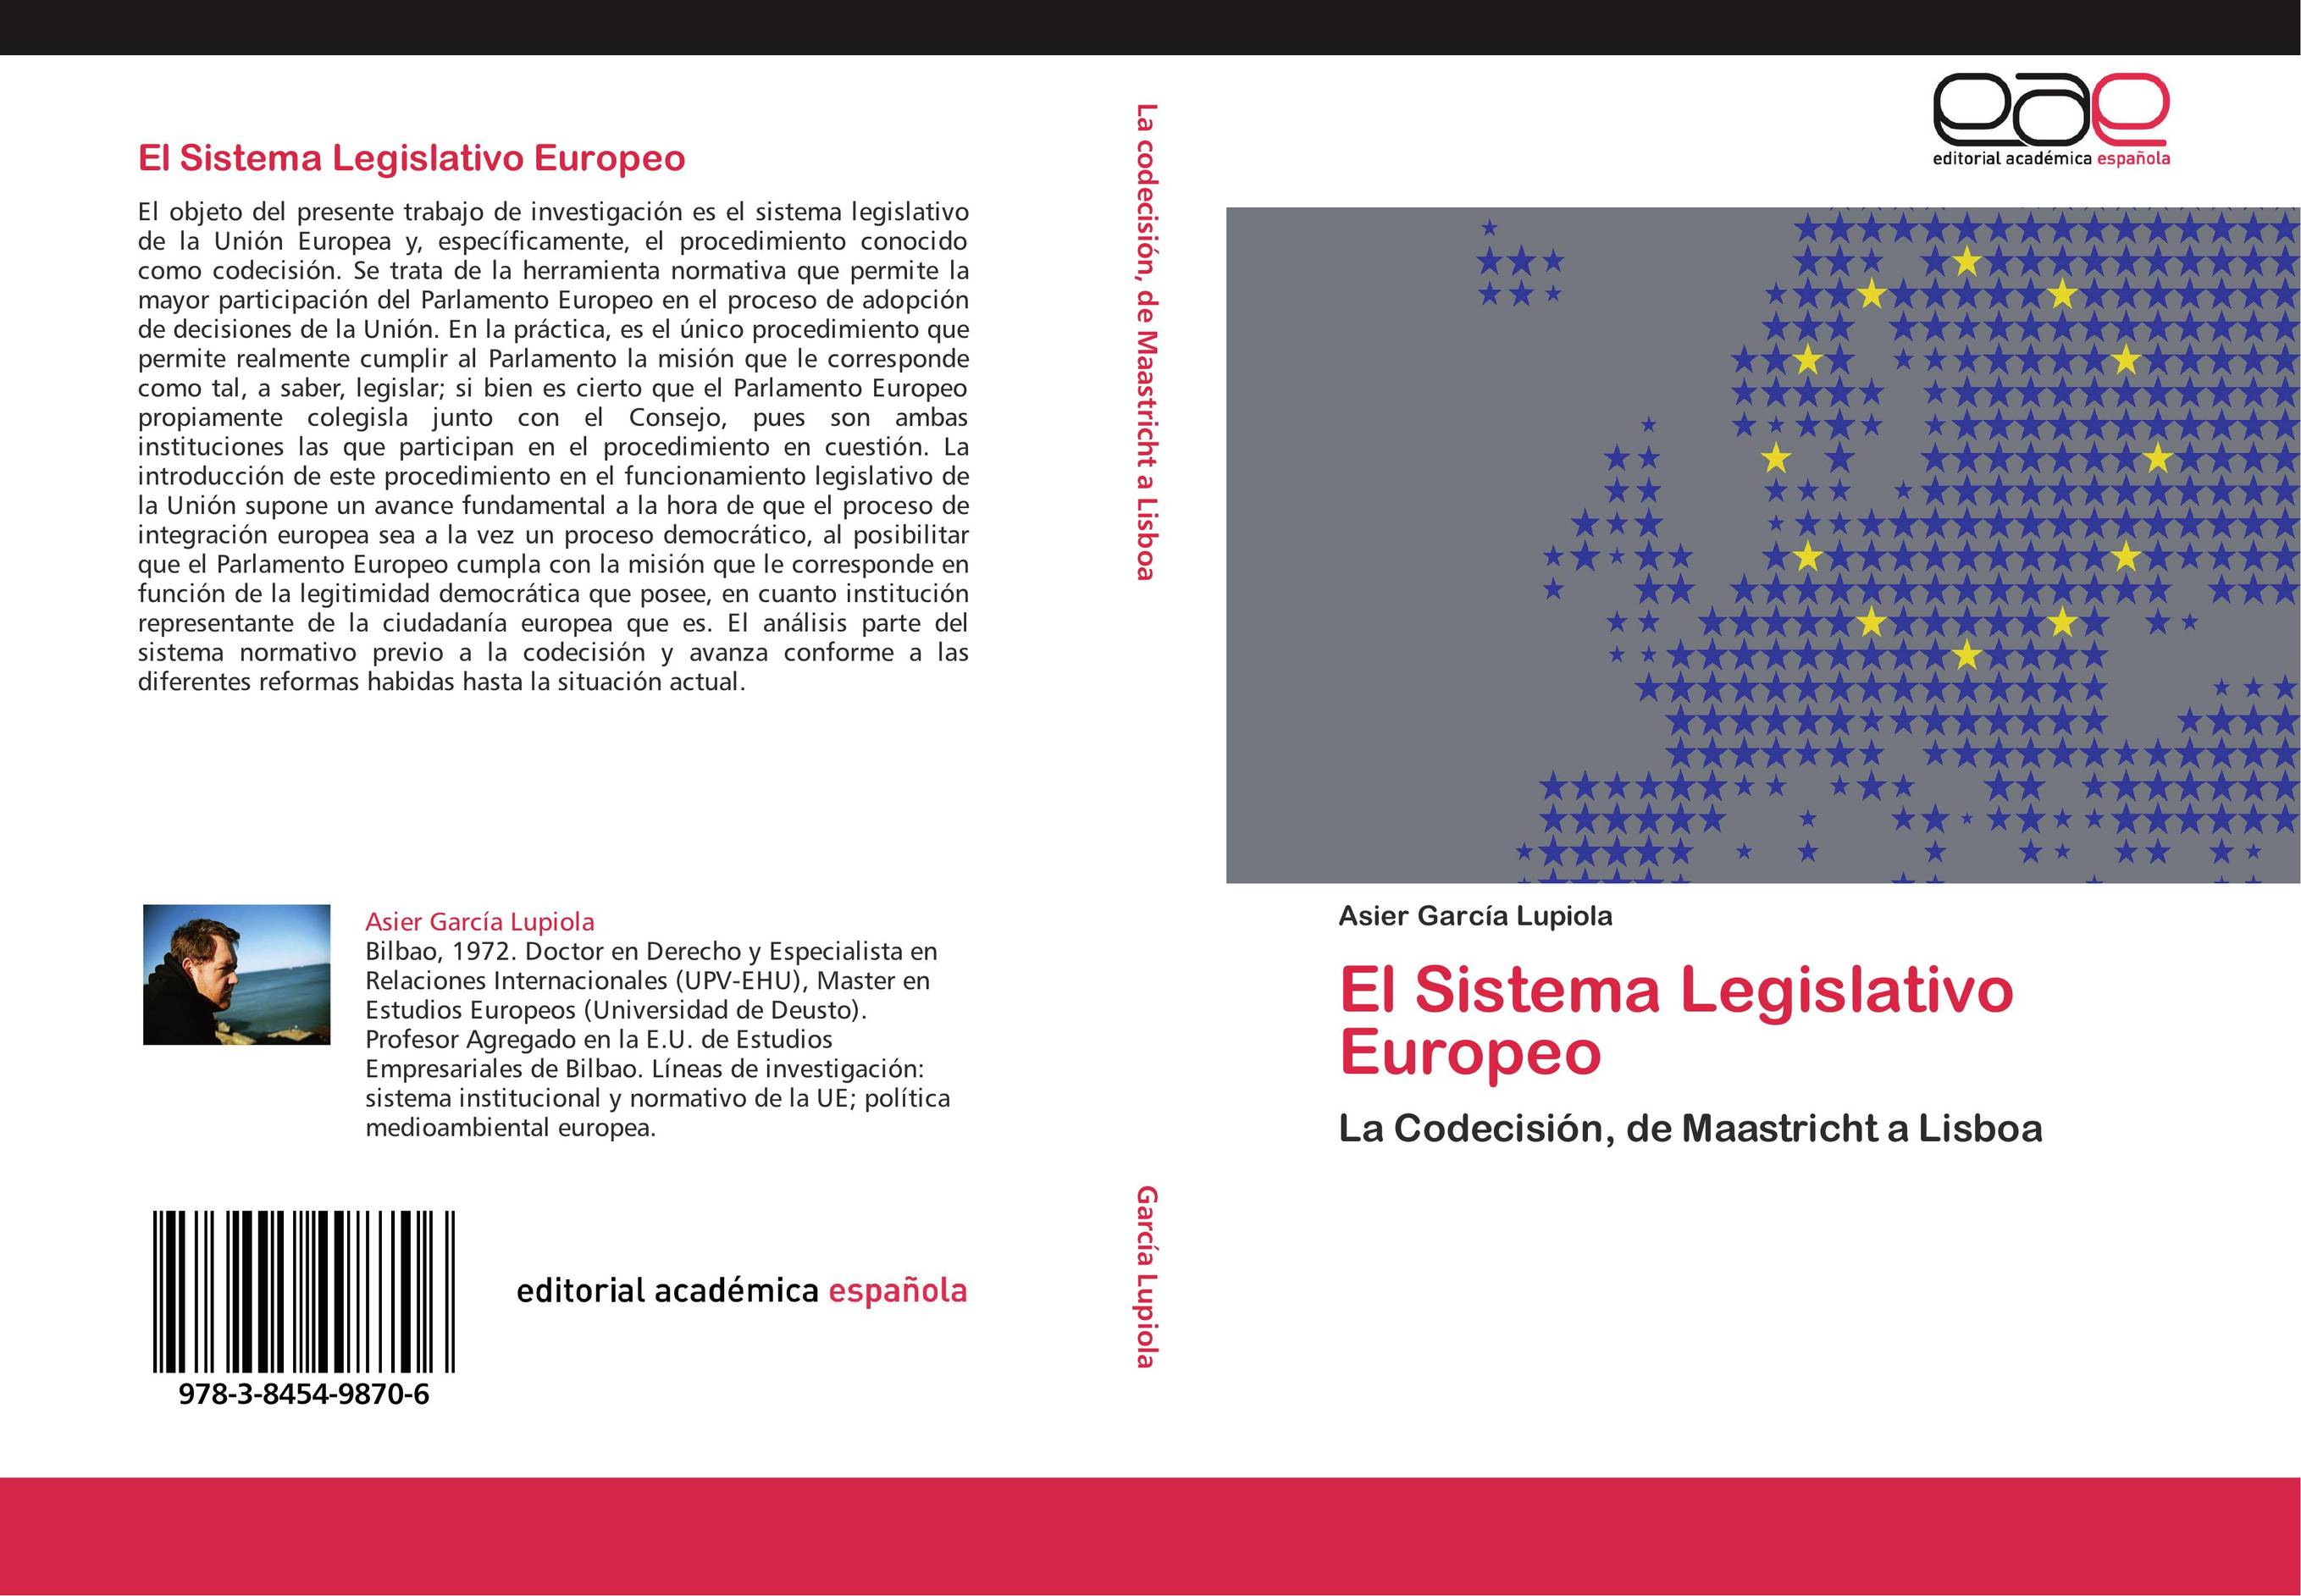 El Sistema Legislativo Europeo